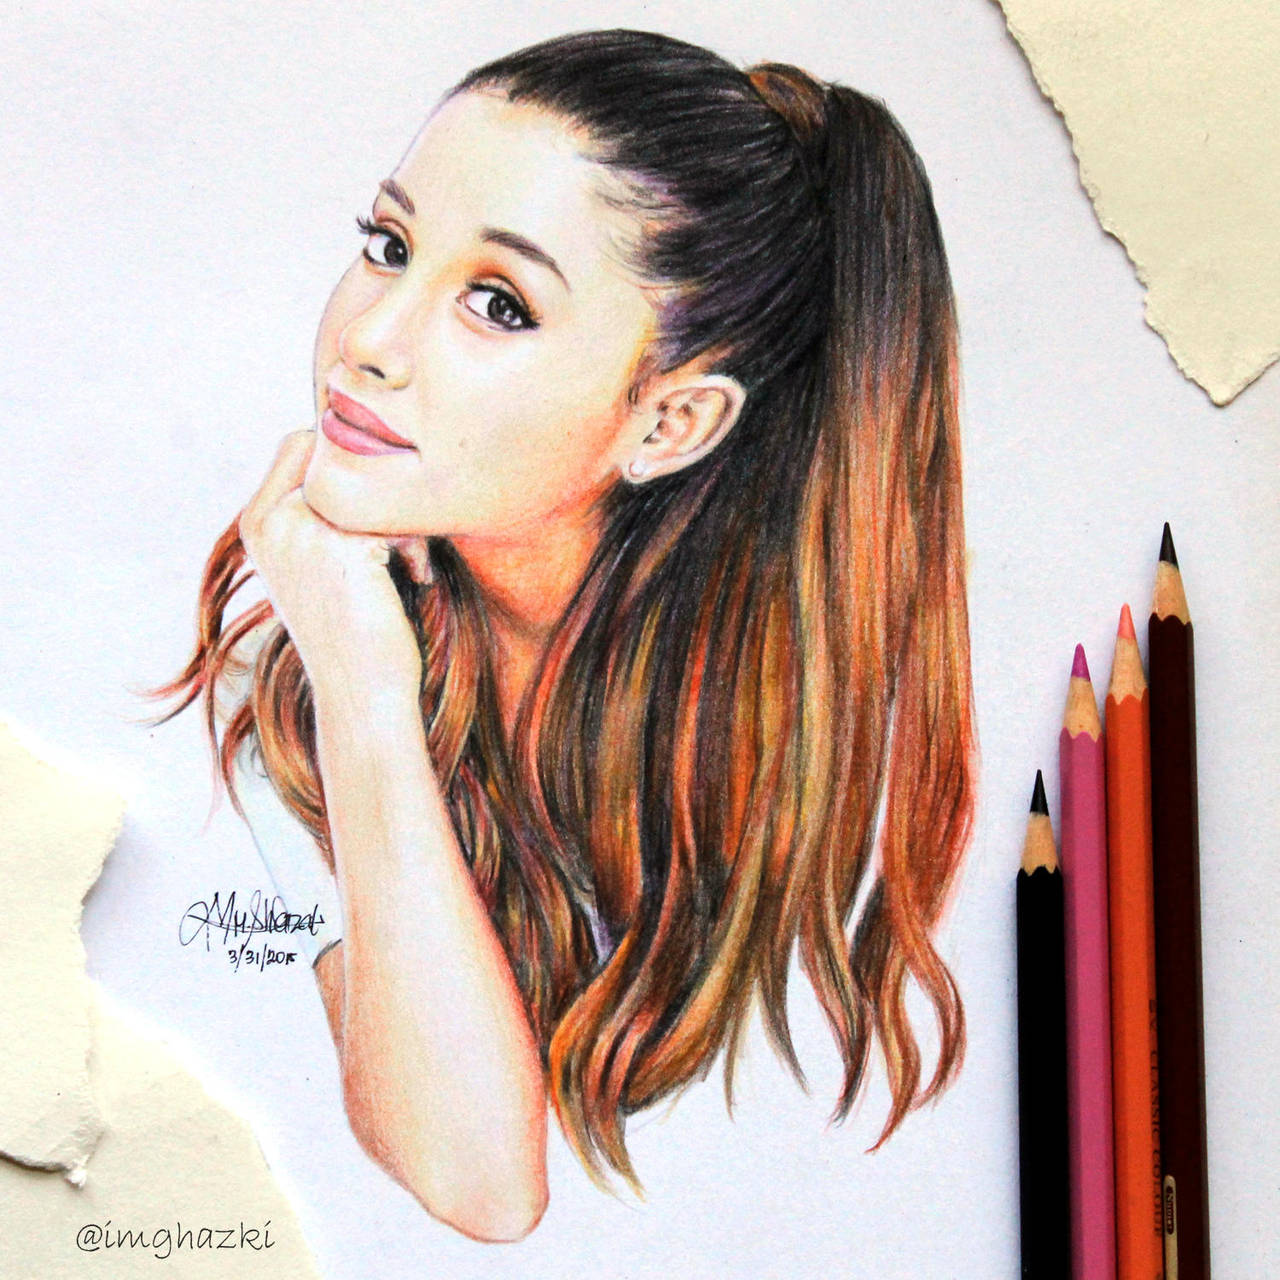 Ariana Grande art by imghazki on DeviantArt